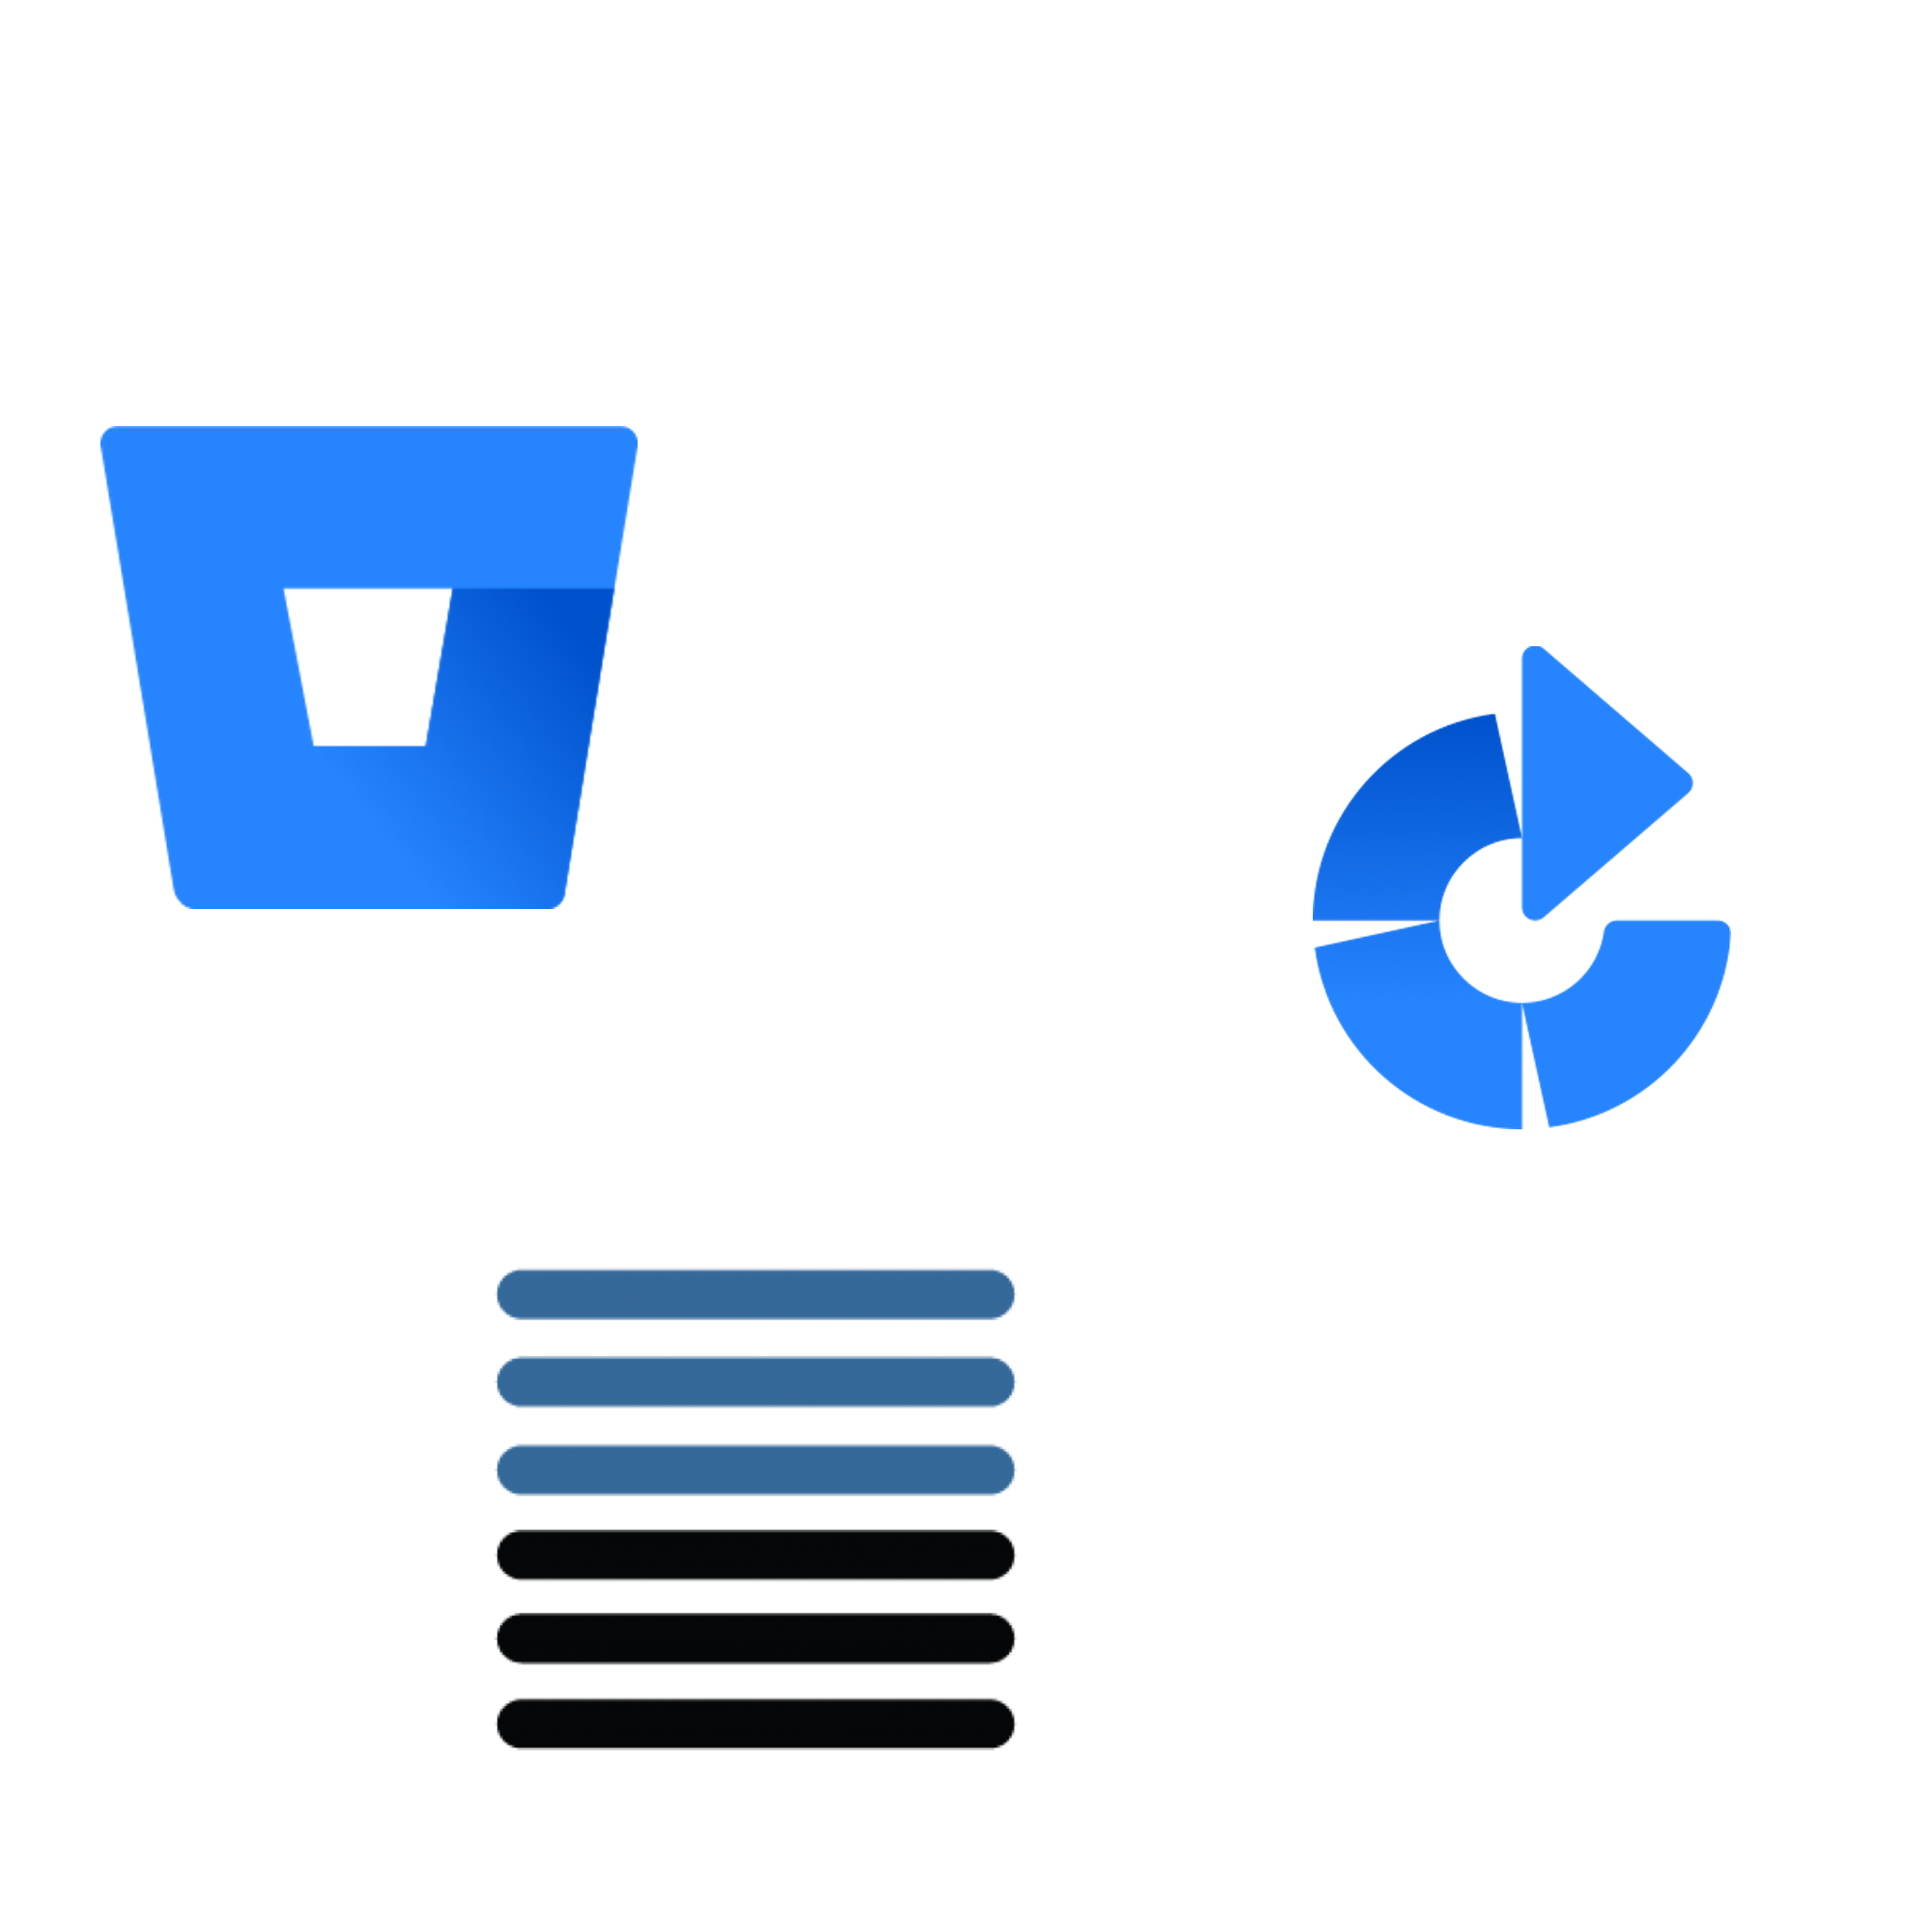 Atlassian Bambo, Atlassian Bitbucket and Nexus logos